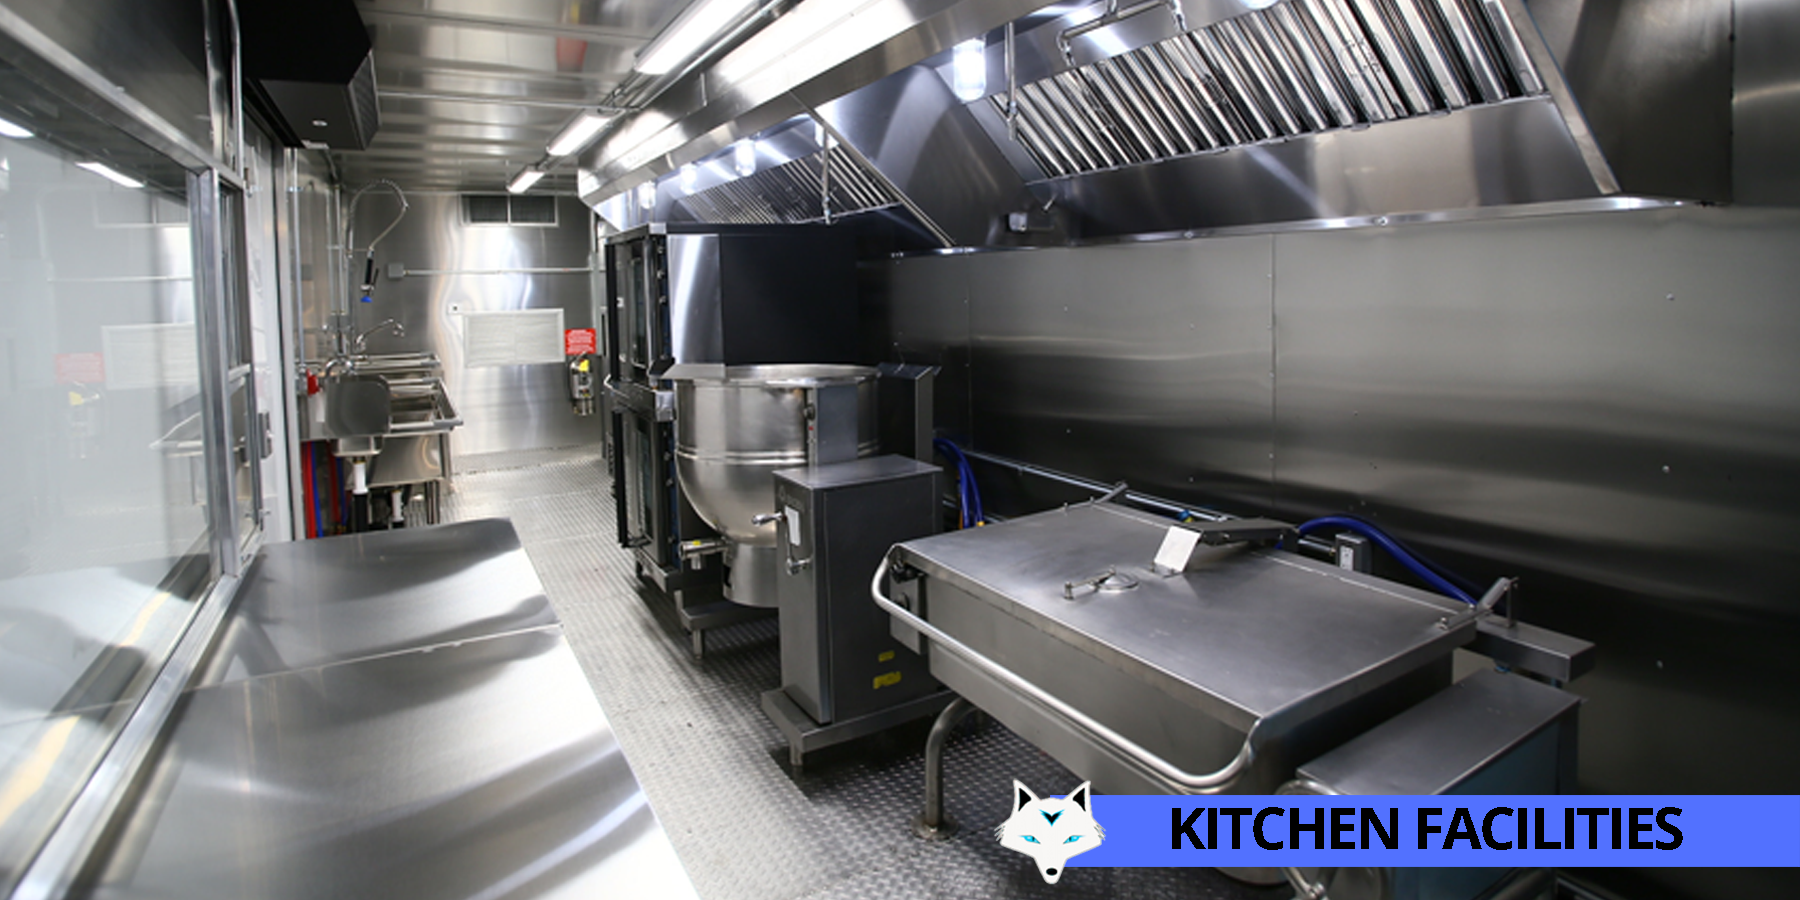 11 - kitchen facilities